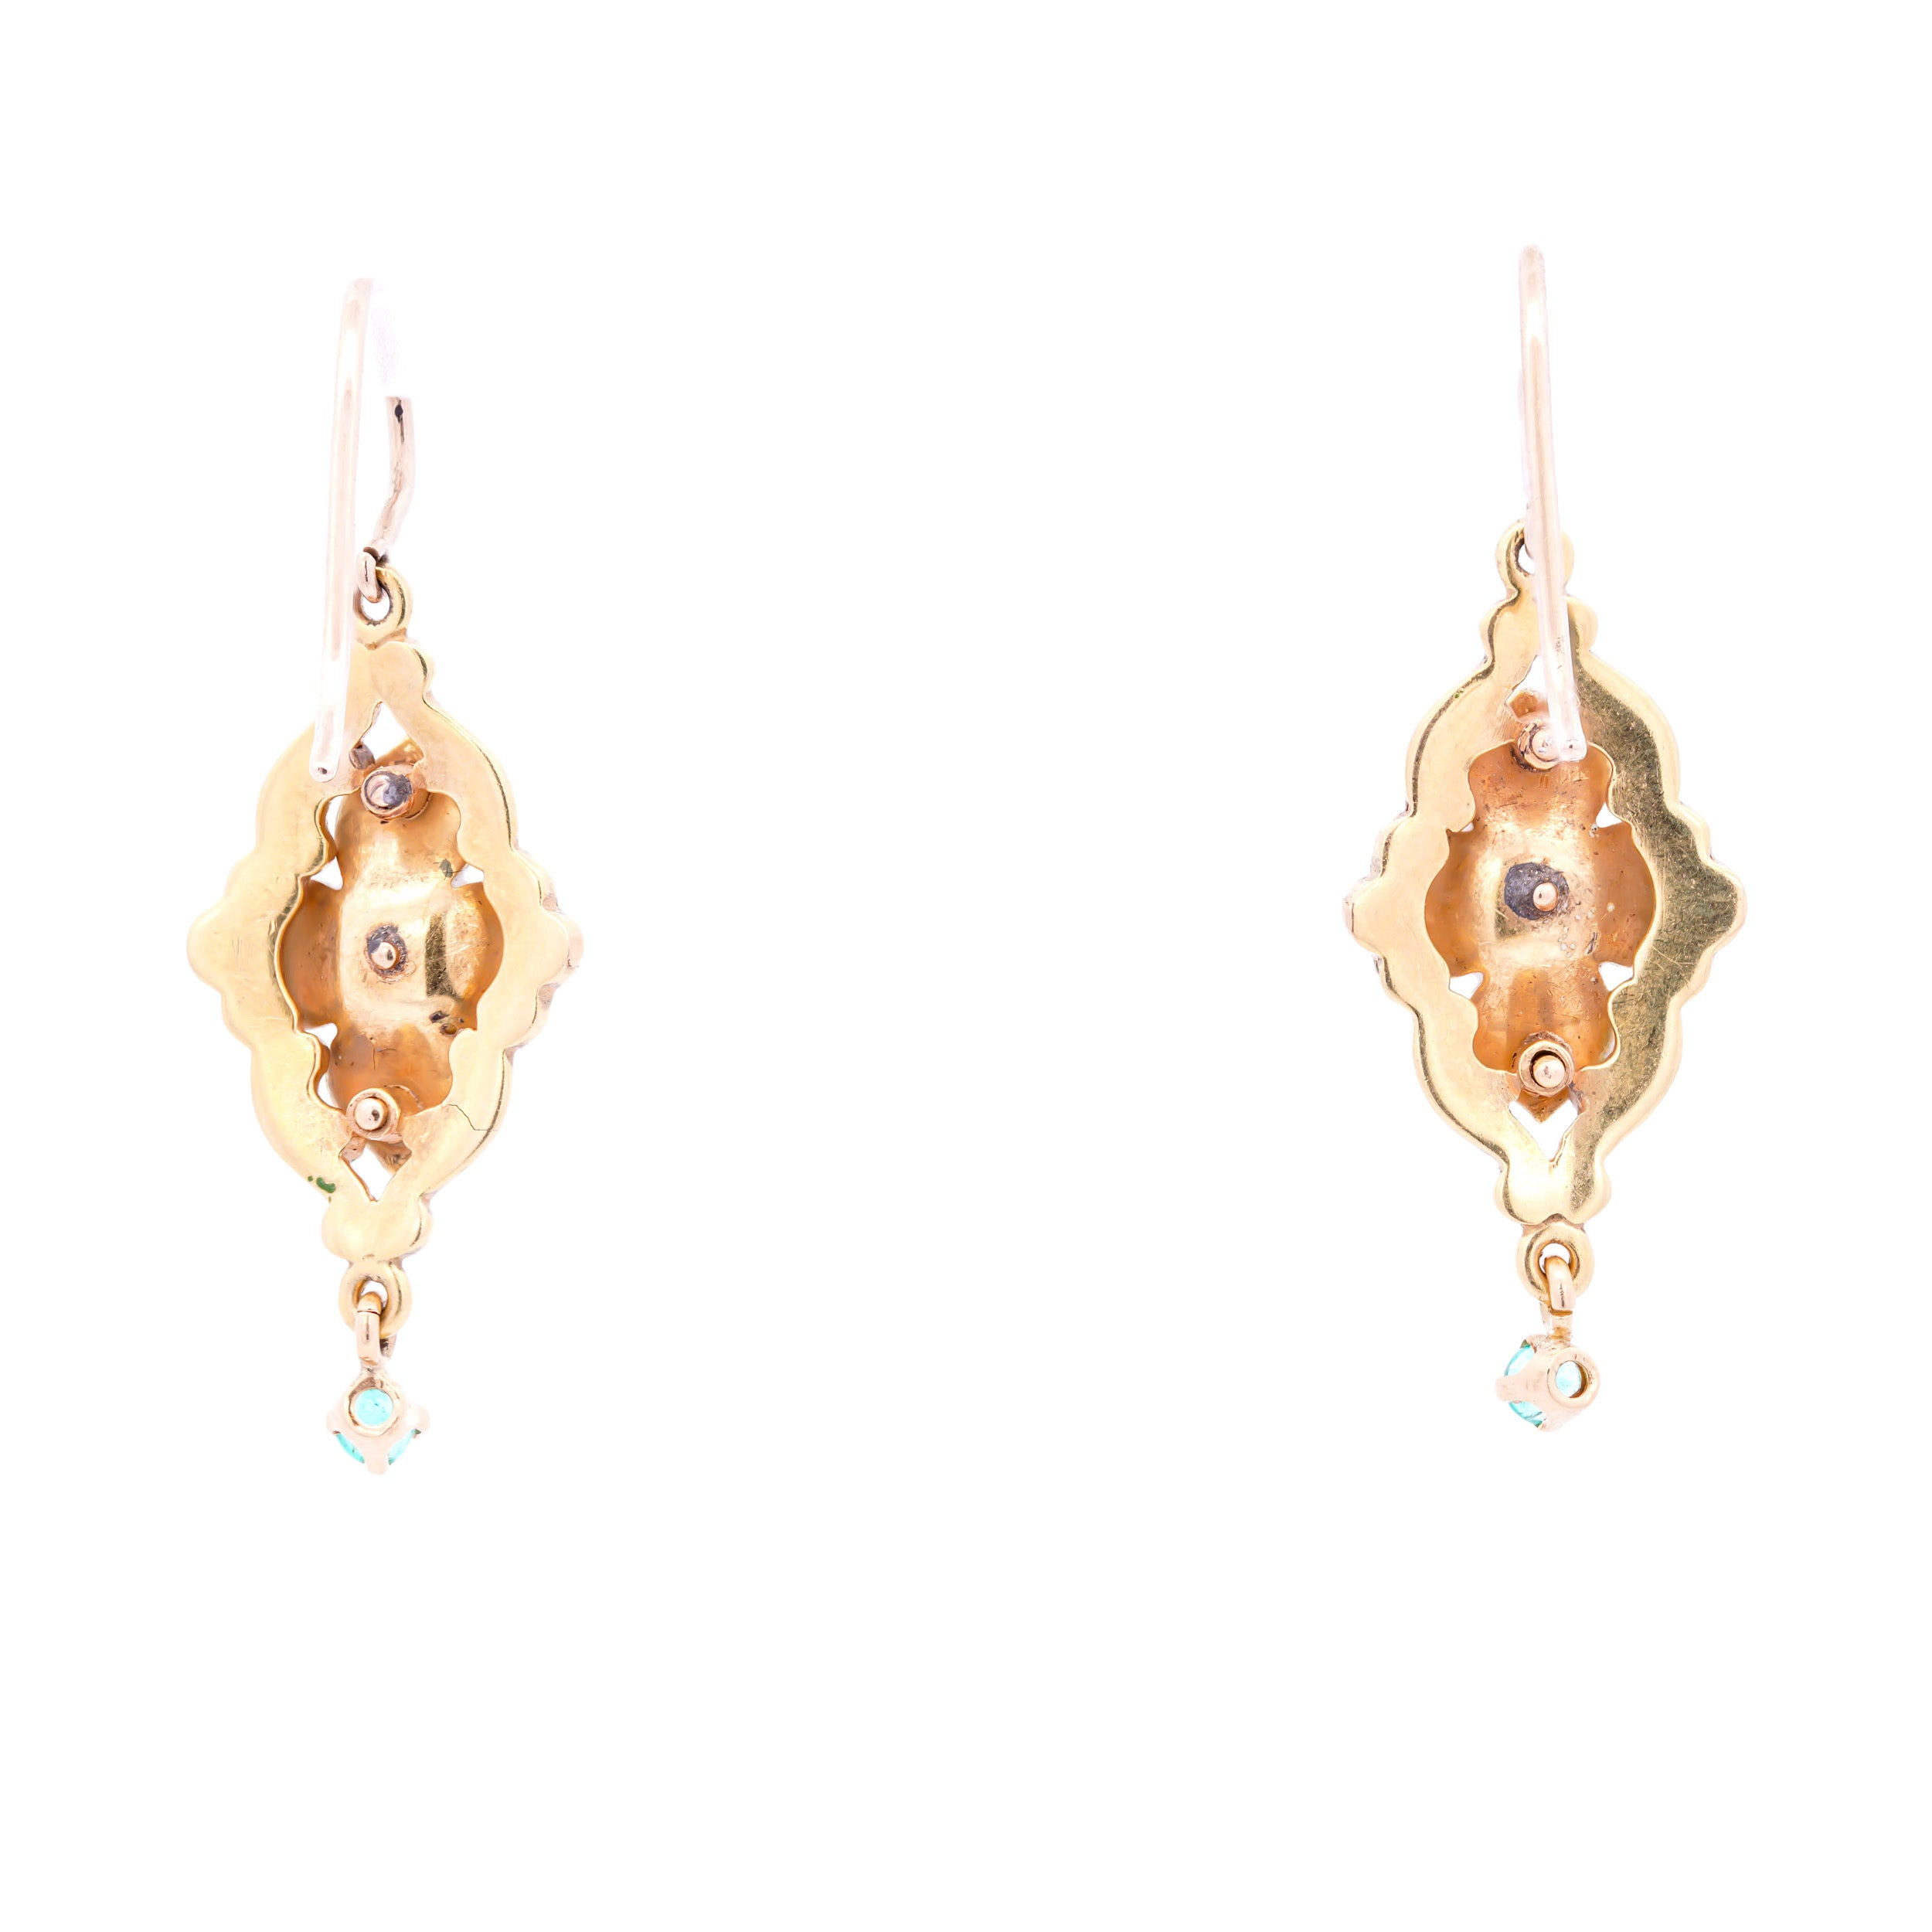 Victorian 18k Yellow Gold Enamel Diamond & Emerald Floral Earrings